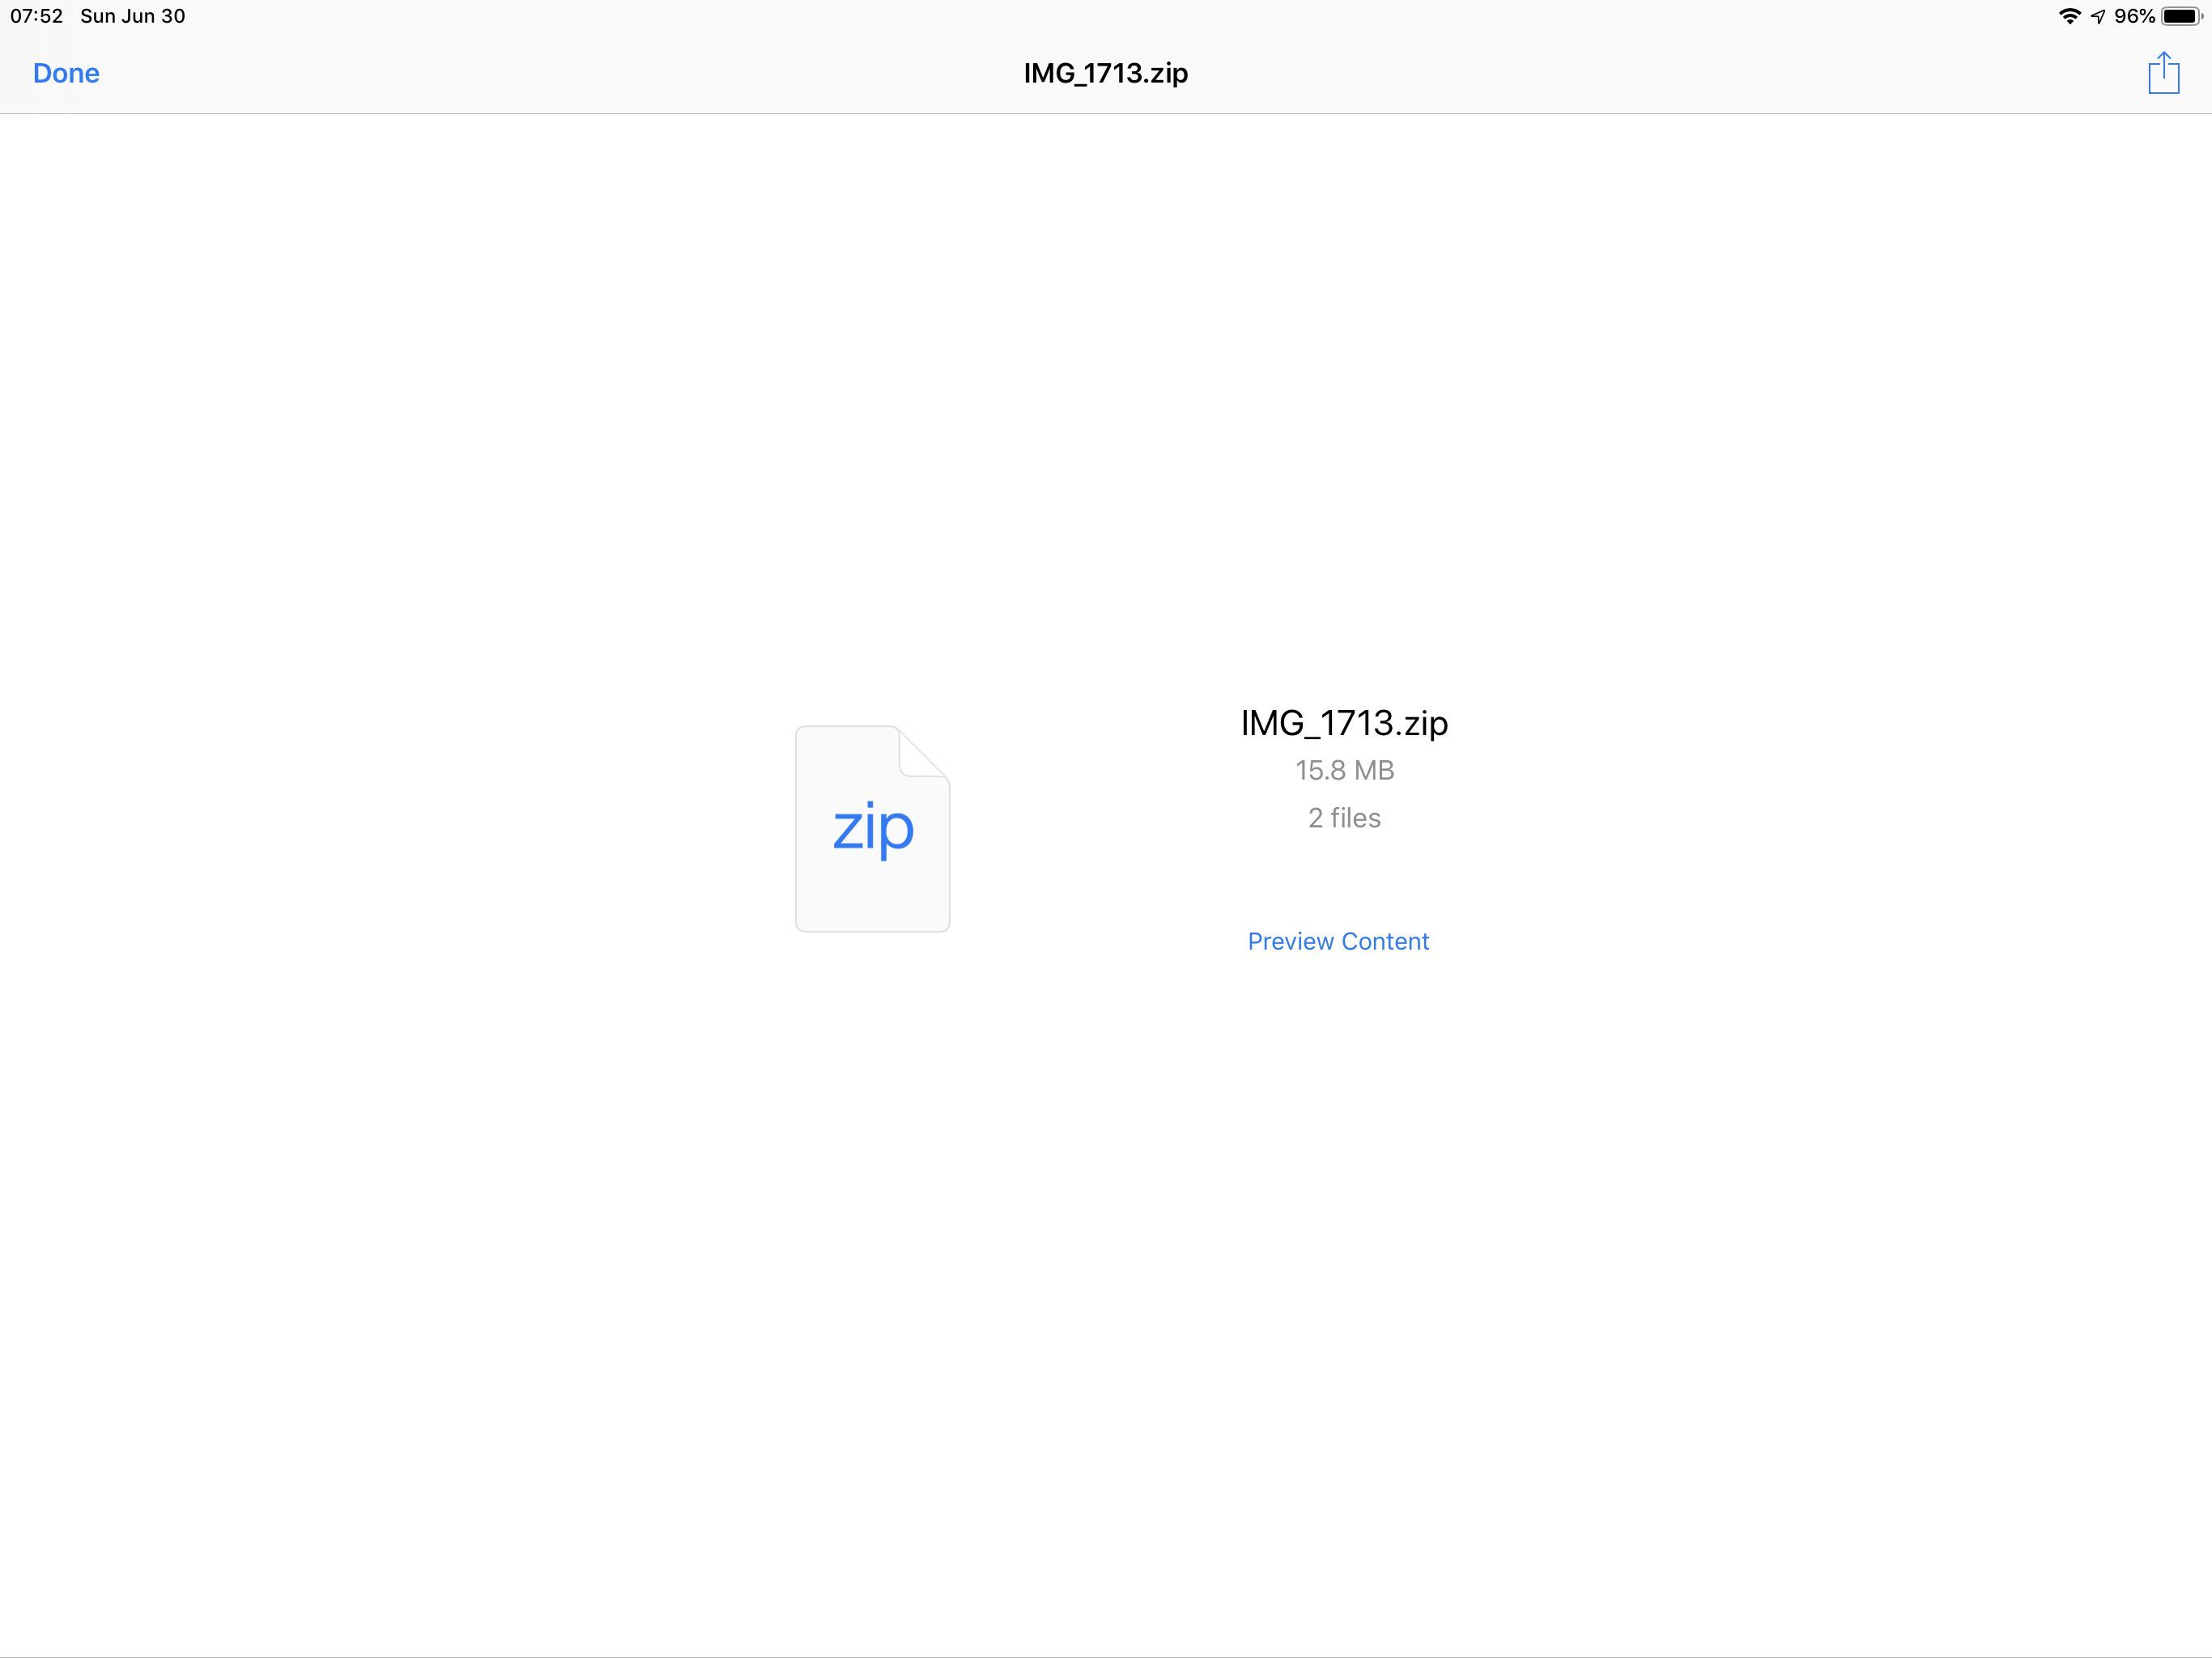 На снимке экрана показаны данные zip-файла (15,8 МБ, 2 файла) с возможностью предварительного просмотра содержимого